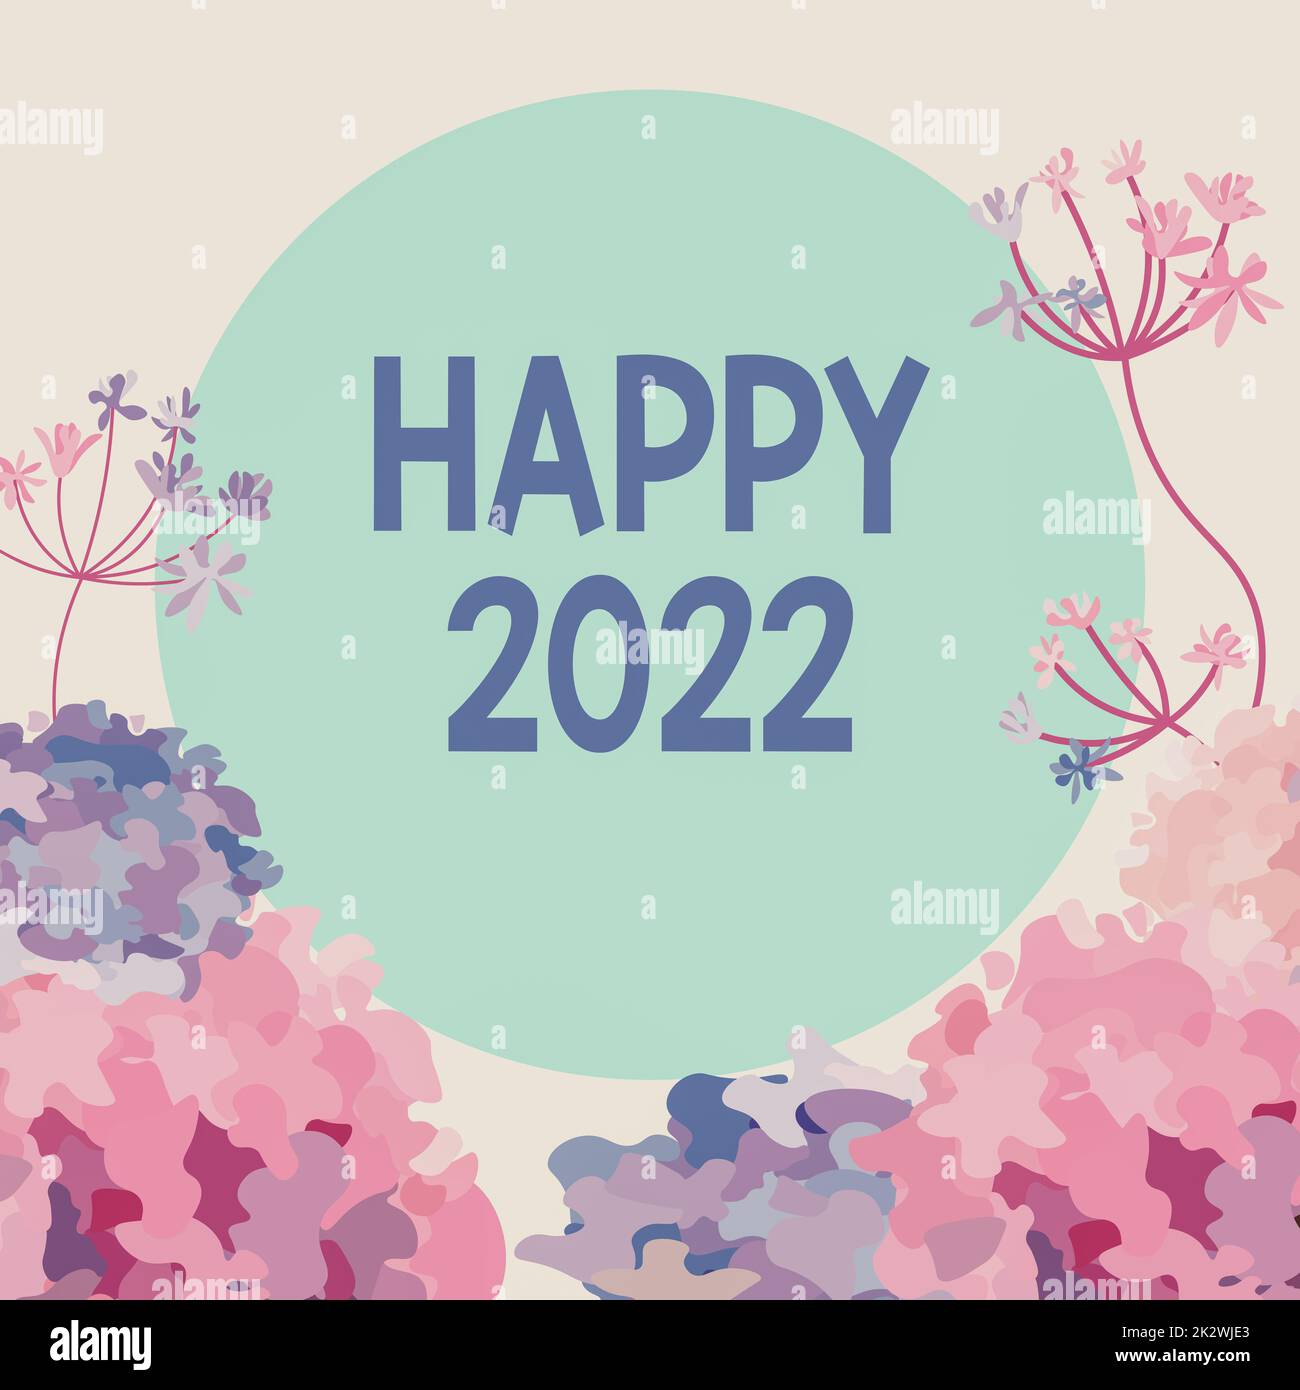 Légende conceptuelle Happy 2022. Mot pour le moment ou le jour où commence une nouvelle année civile à partir d'aujourd'hui cadre décoré avec des fleurs colorées et de feuillages arrangés harmonieusement. Banque D'Images